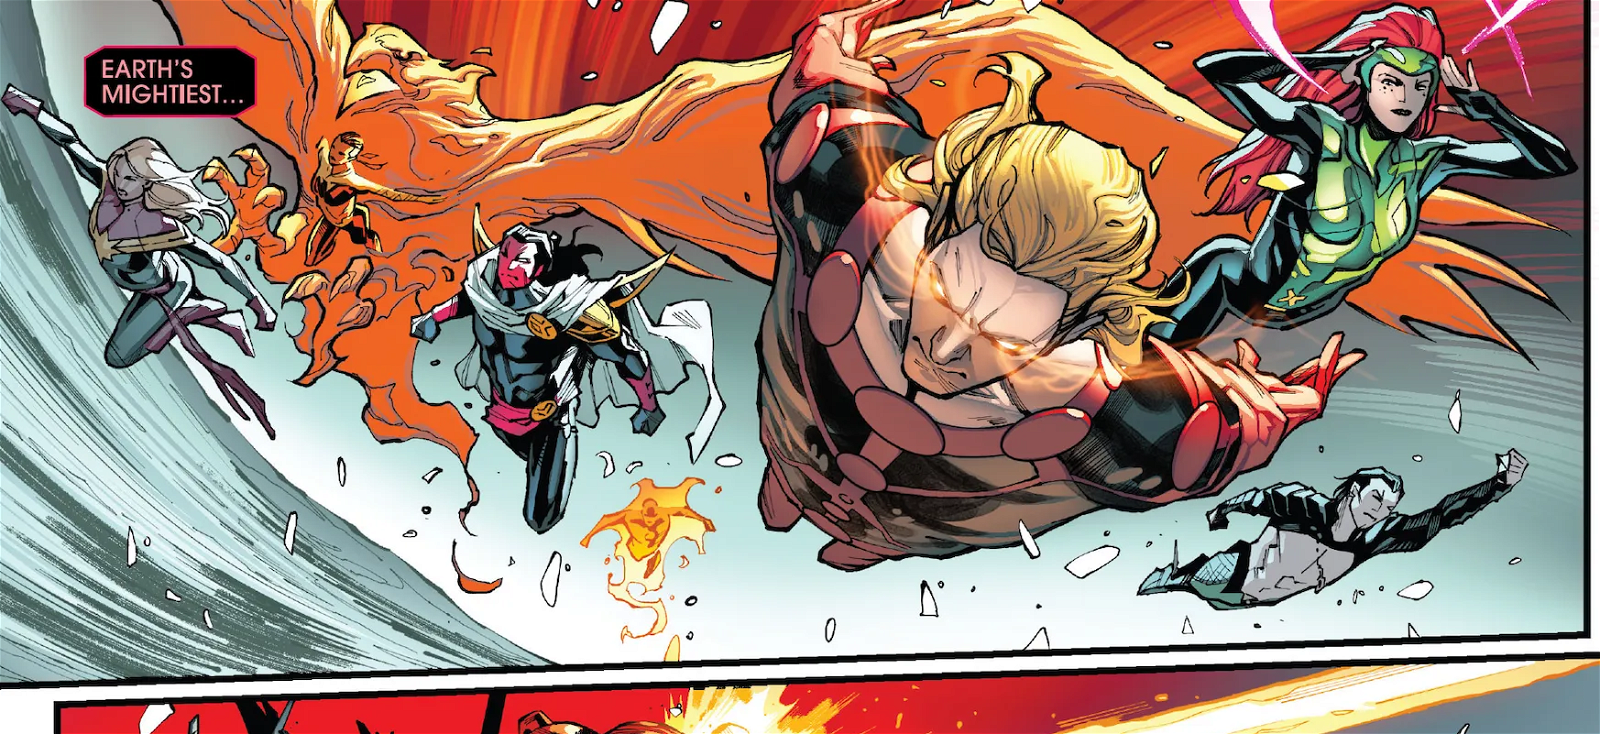 Los 8 héroes más poderosos de Marvel